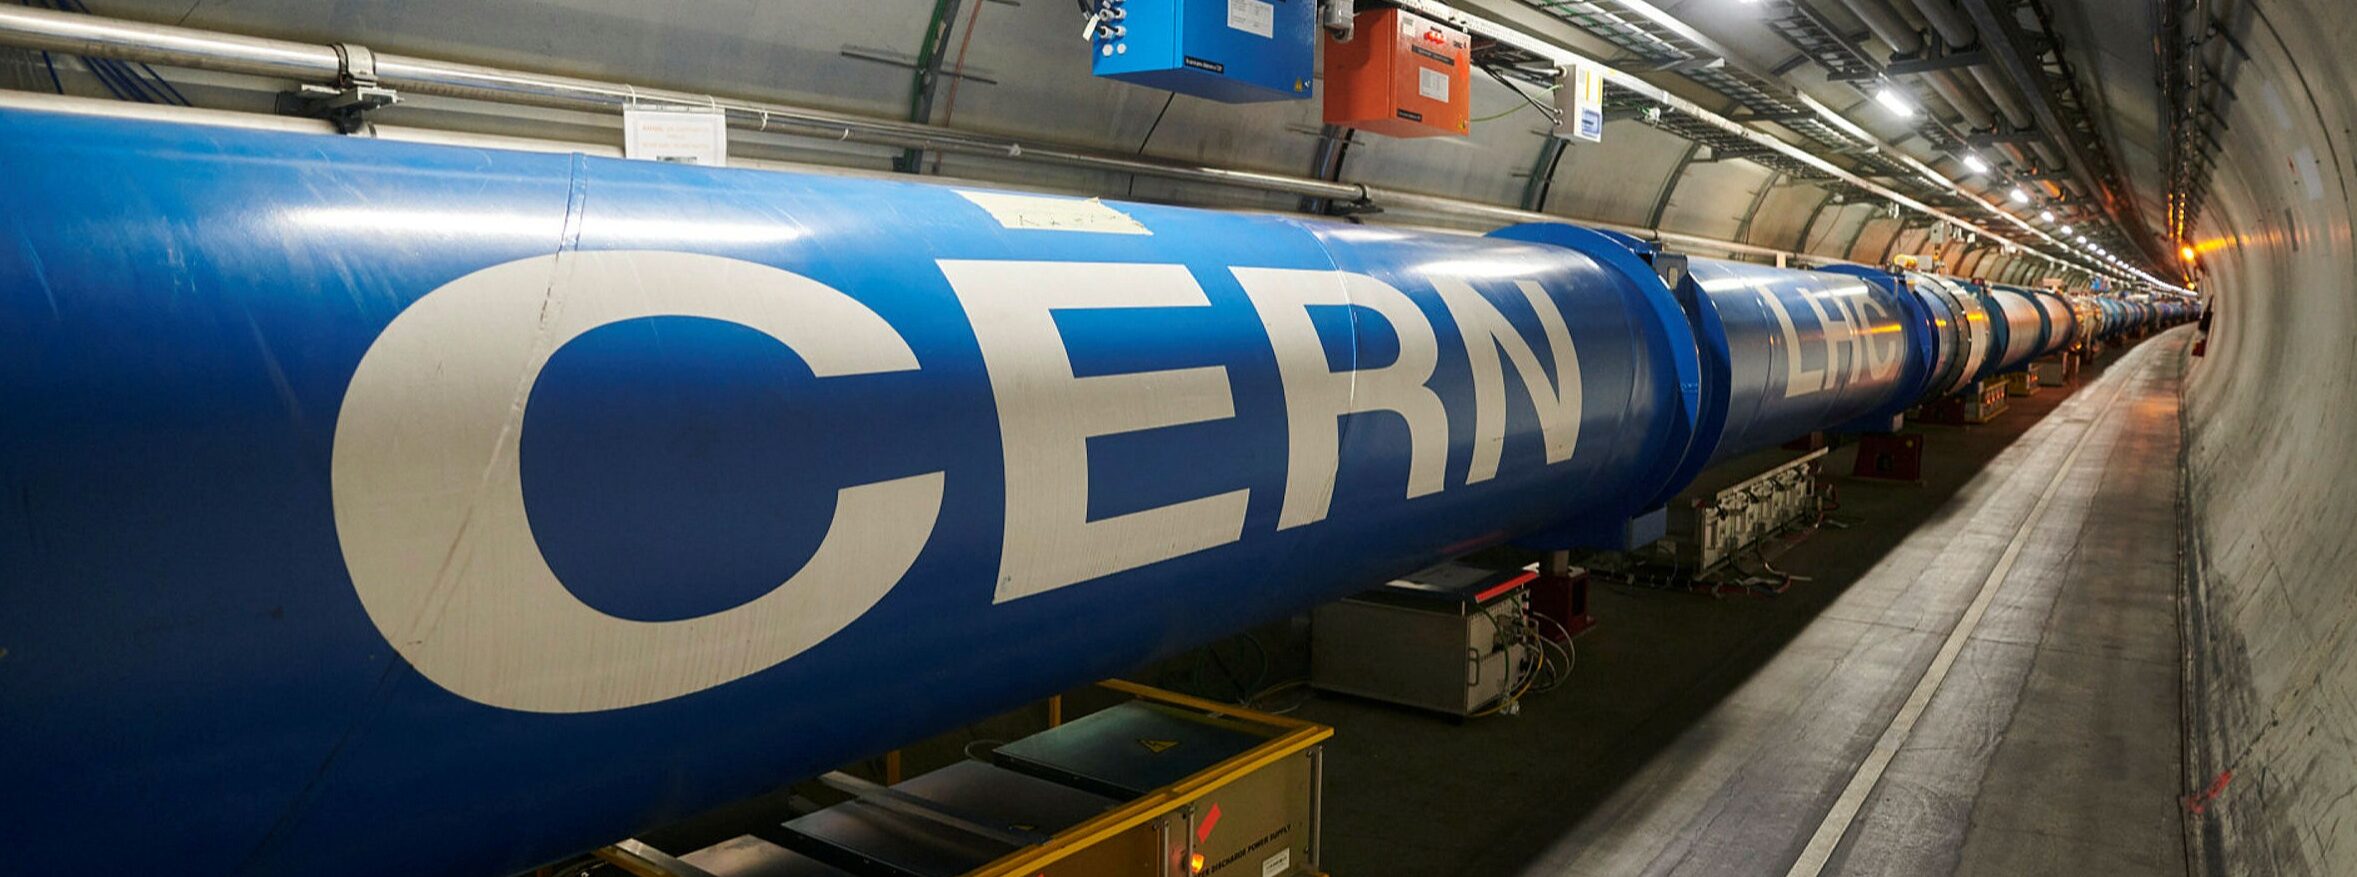 Το σχολείο μας στο CERN!